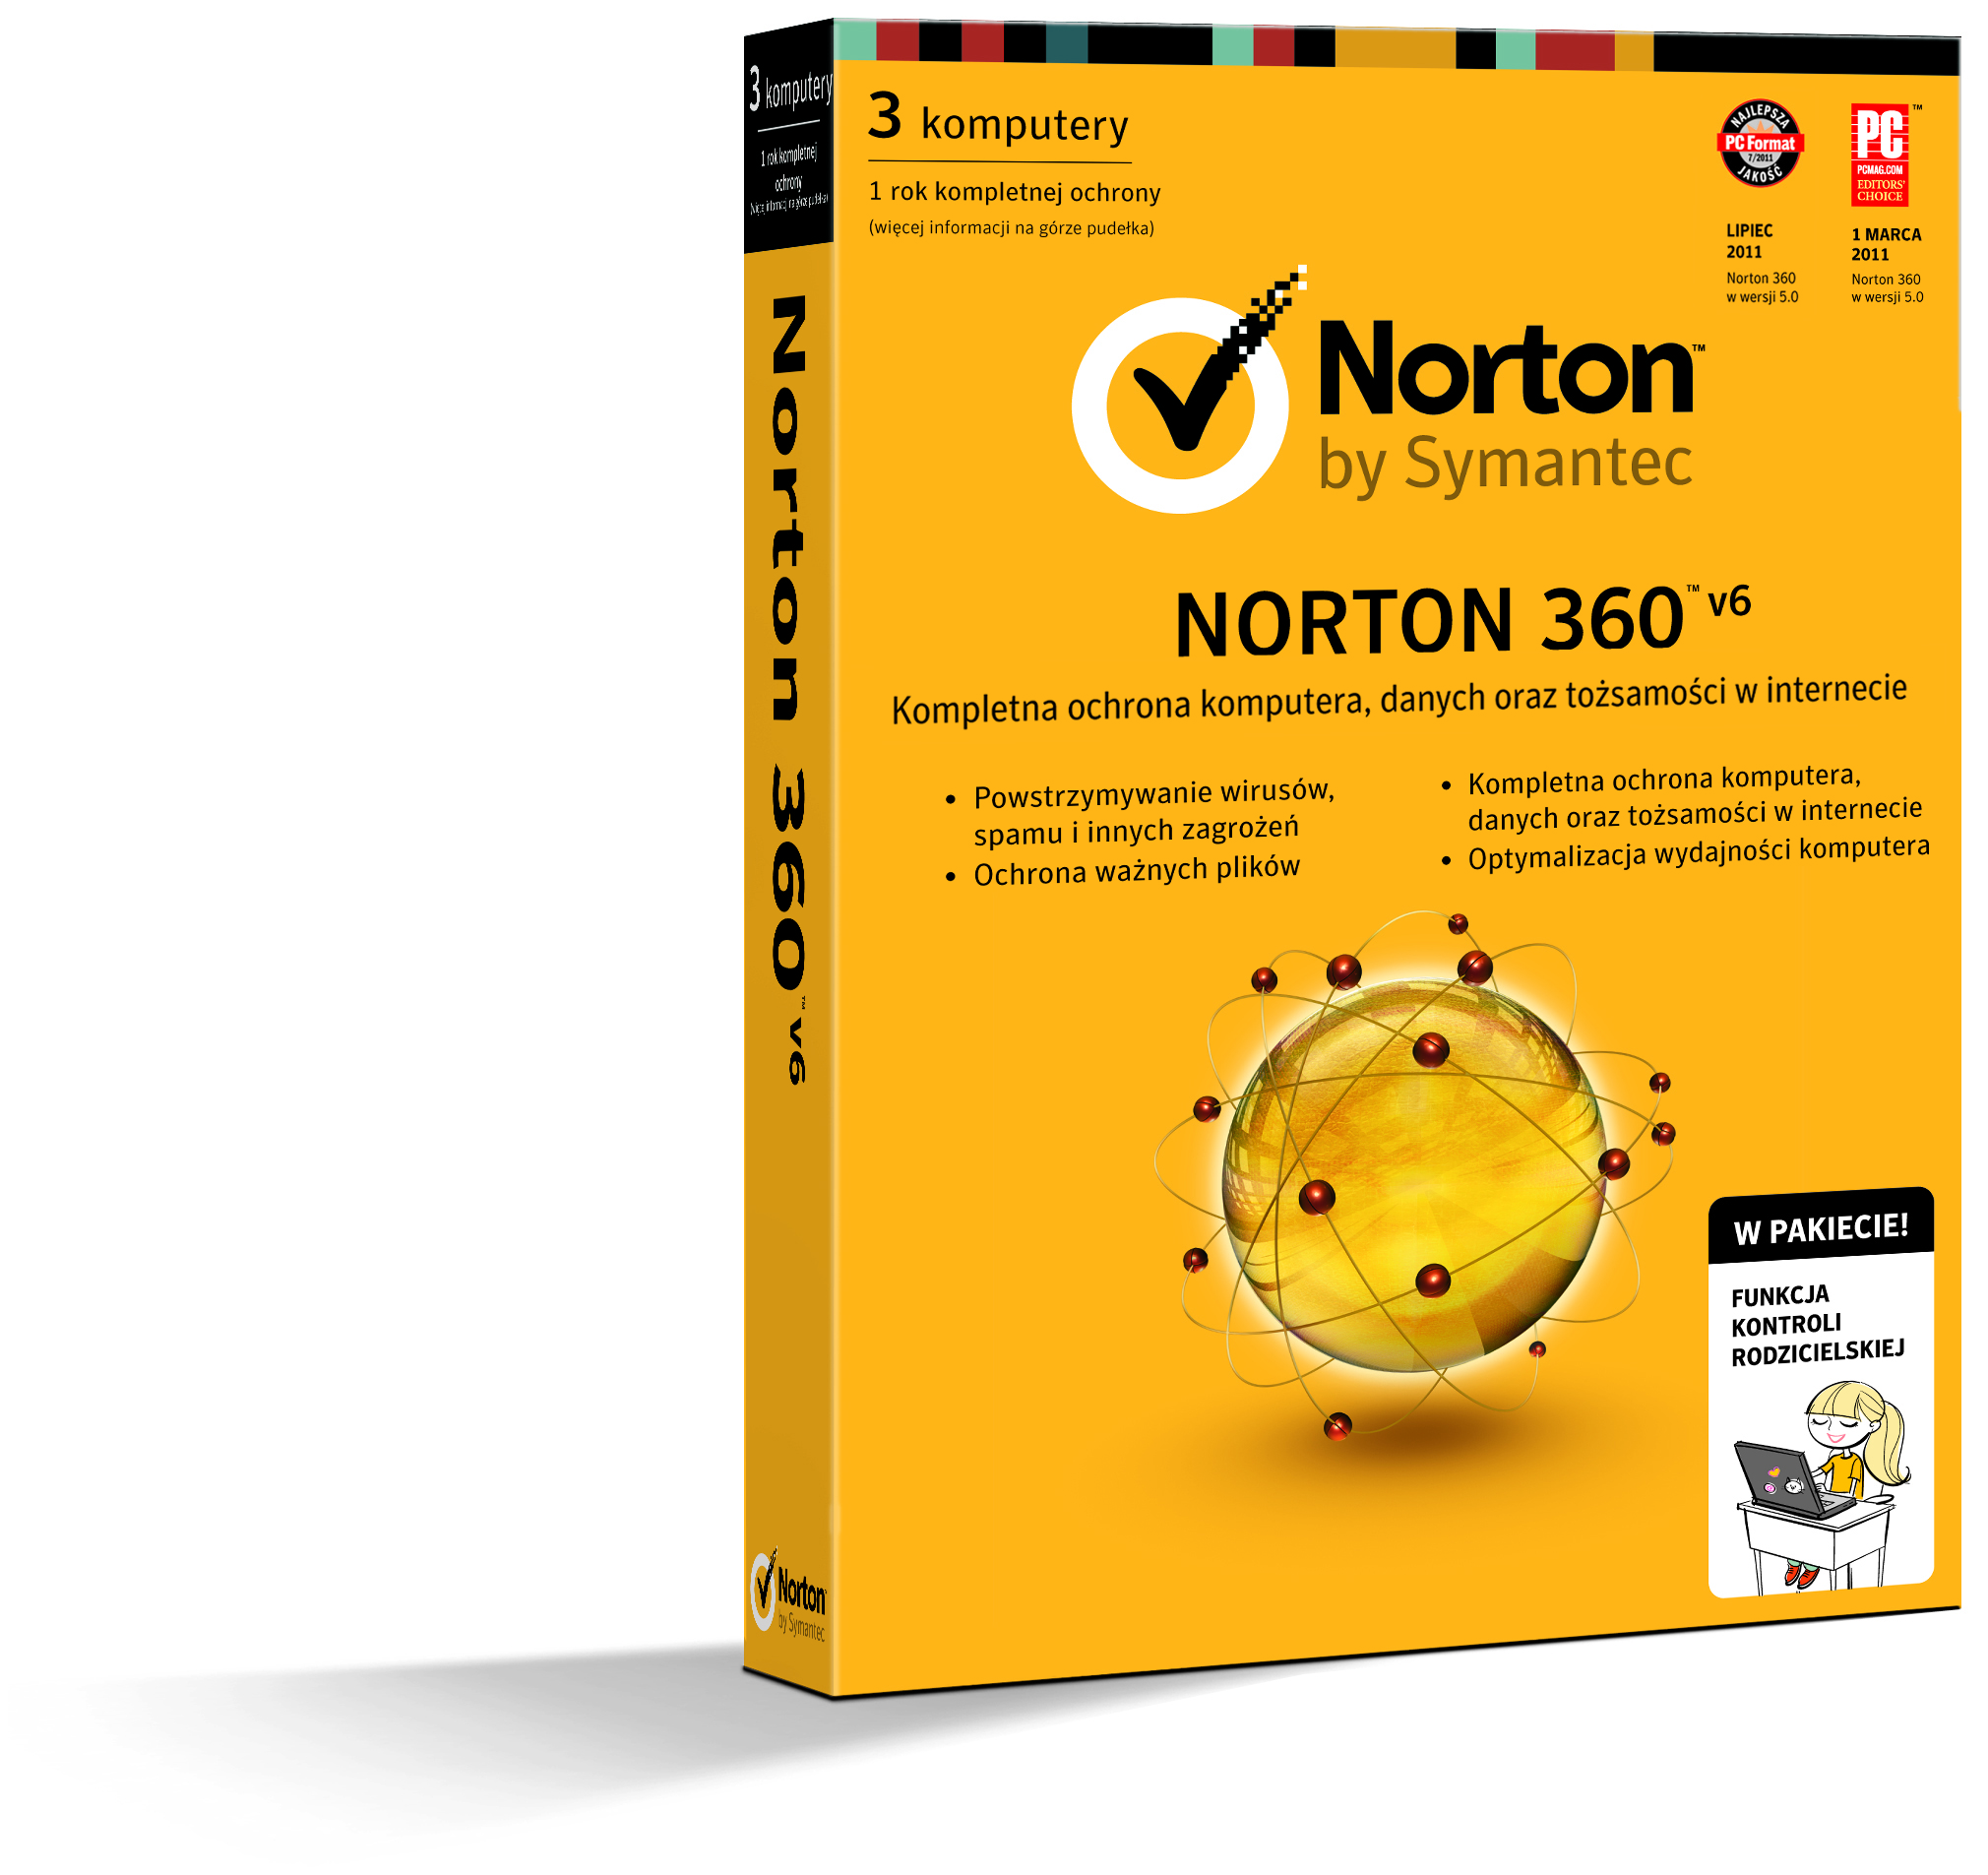 Symantec: nowy Norton 360